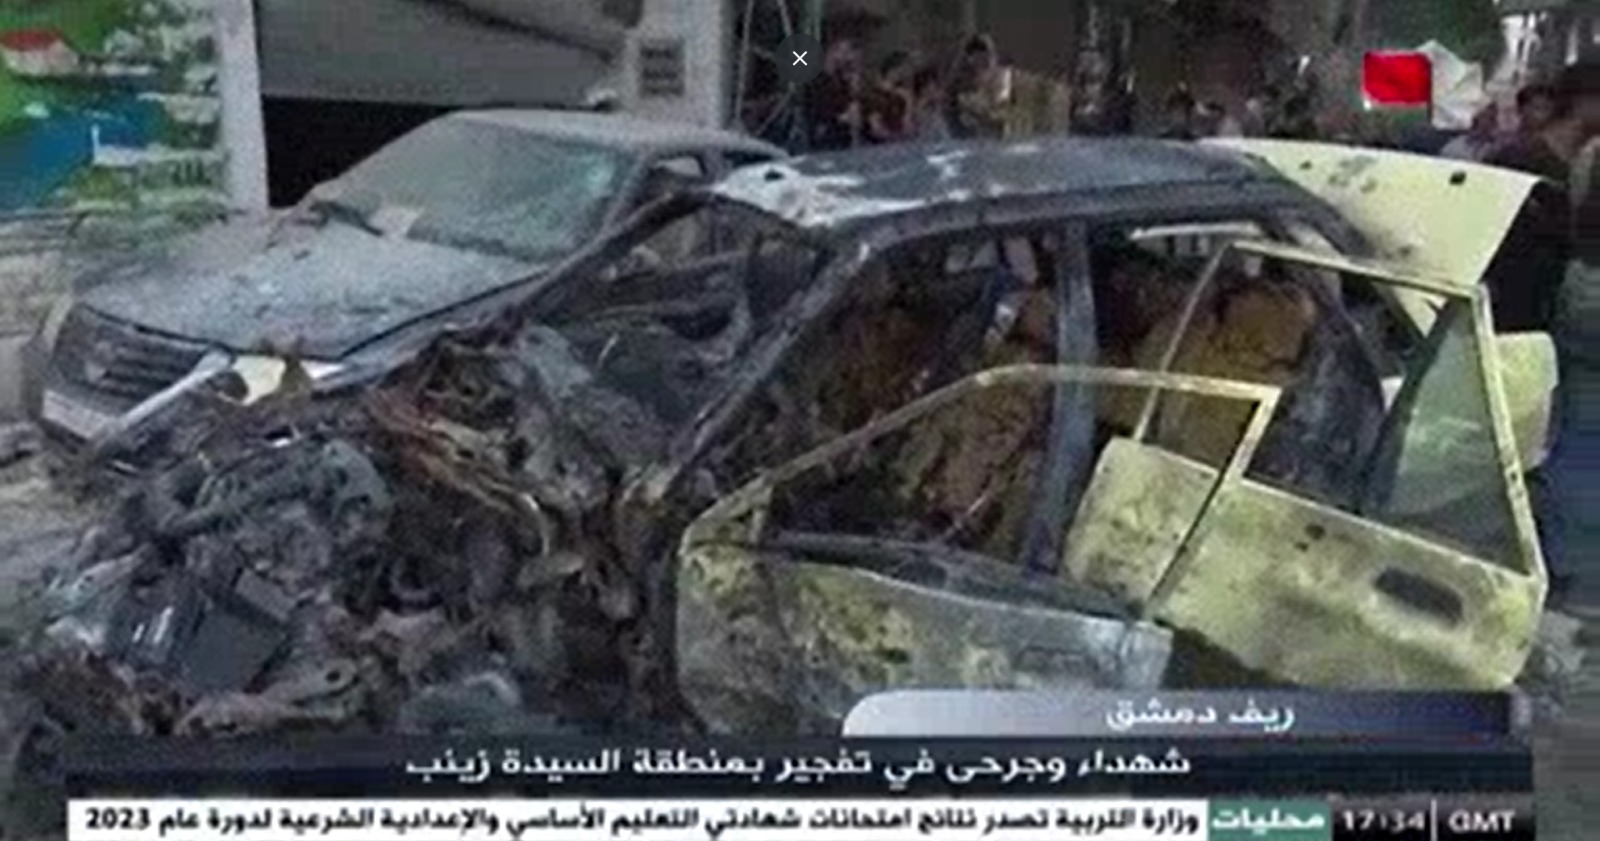 叙利亚再传汽车炸弹袭击  至少6人死亡逾20伤